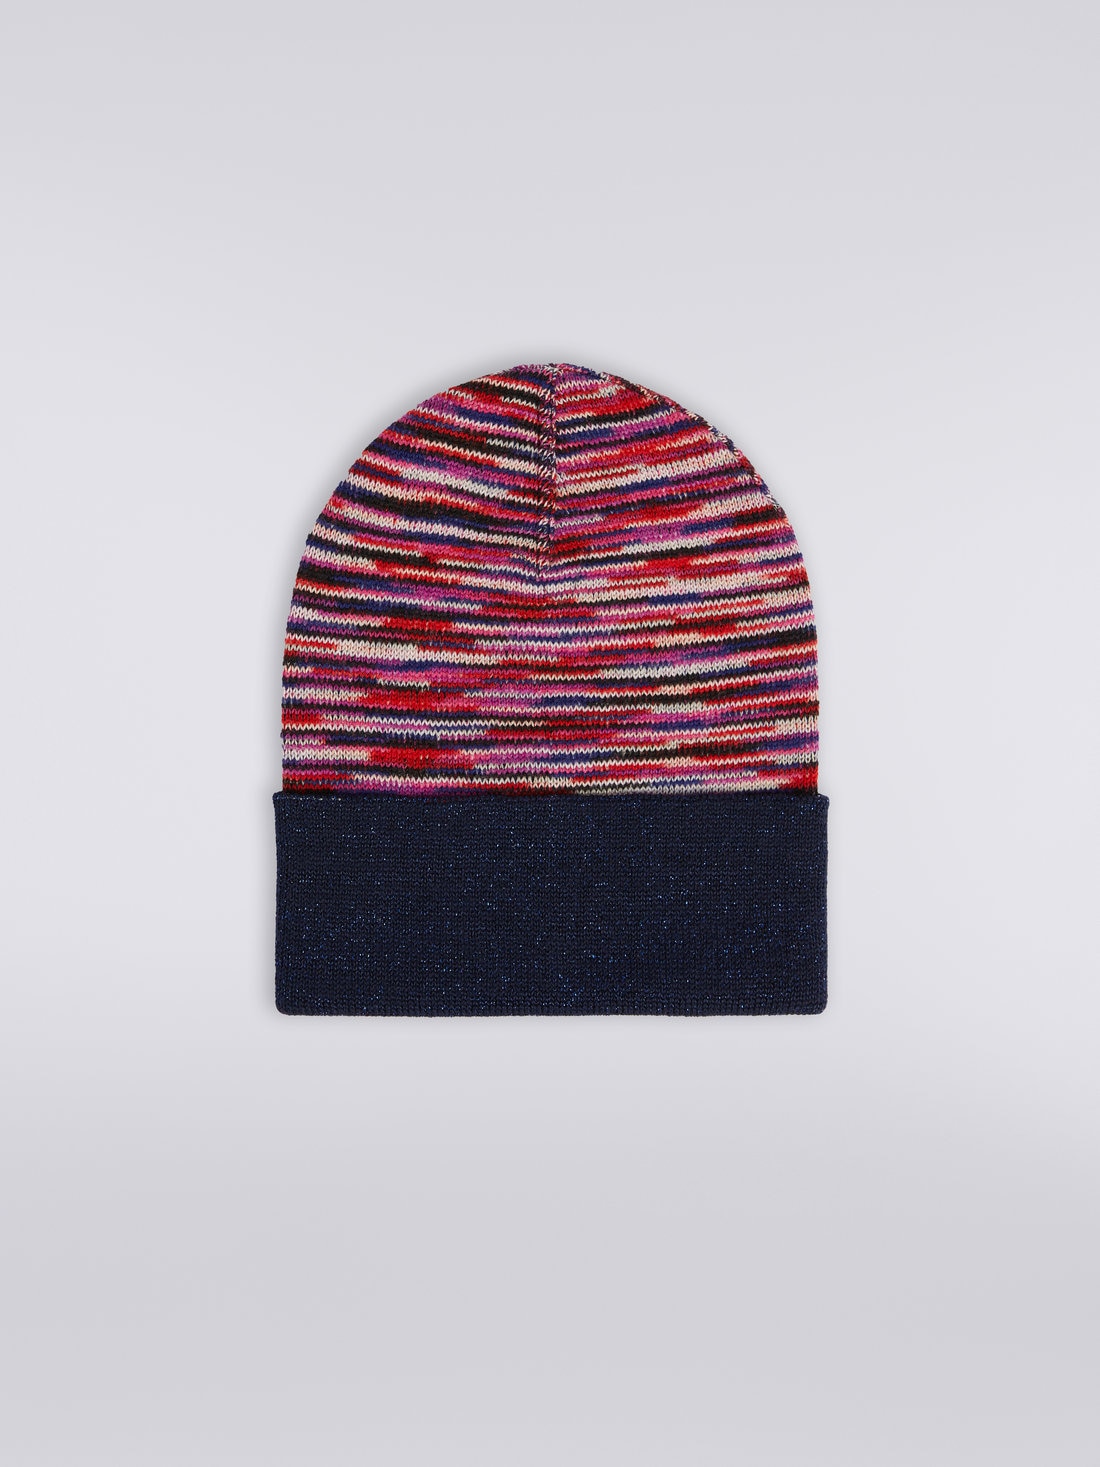 Cappello in lana e viscosa fiammata con lurex, Multicolore  - 8053147024325 - 0